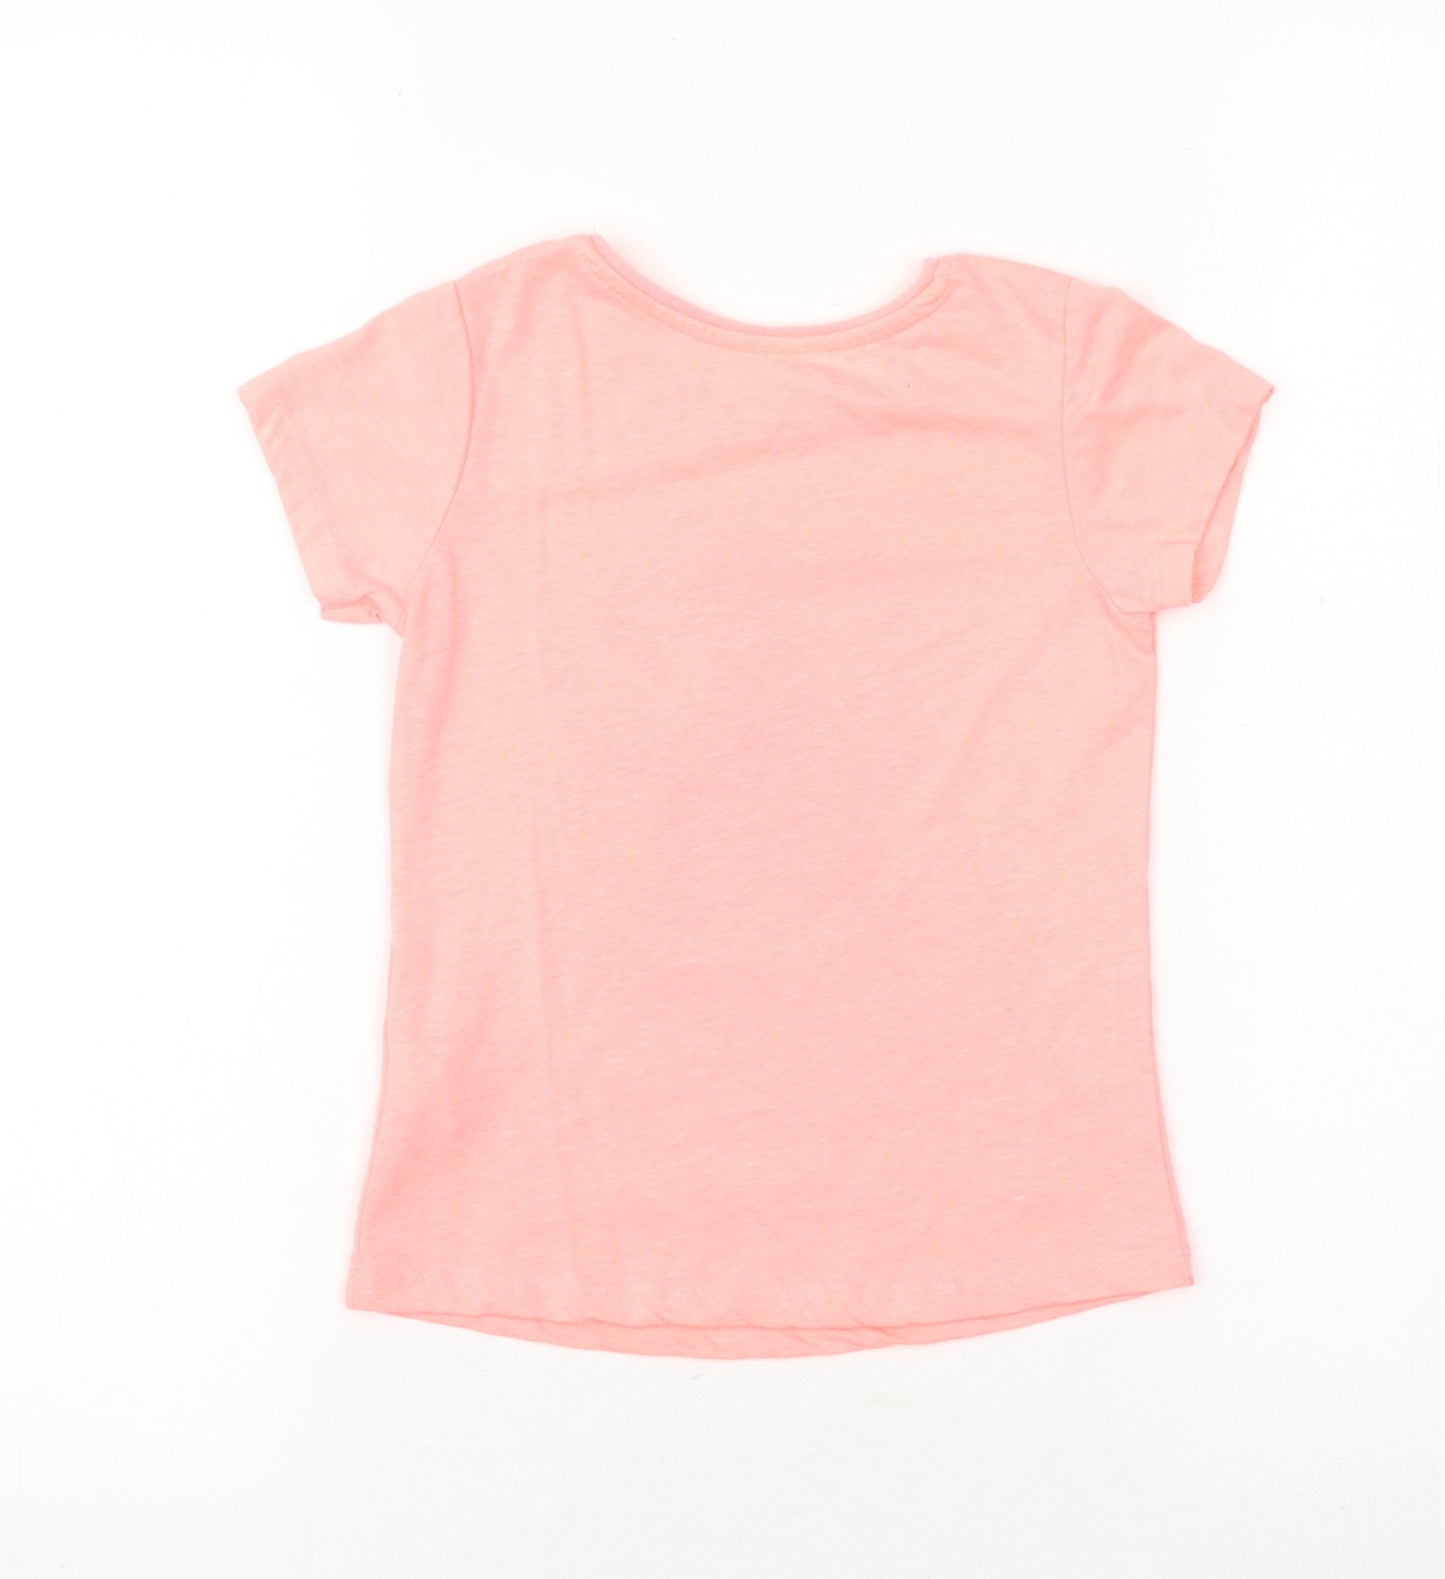 Primark Girls Pink Cotton Basic T-Shirt Size 5-6 Years Round Neck Pullover - Daddy's Superstar